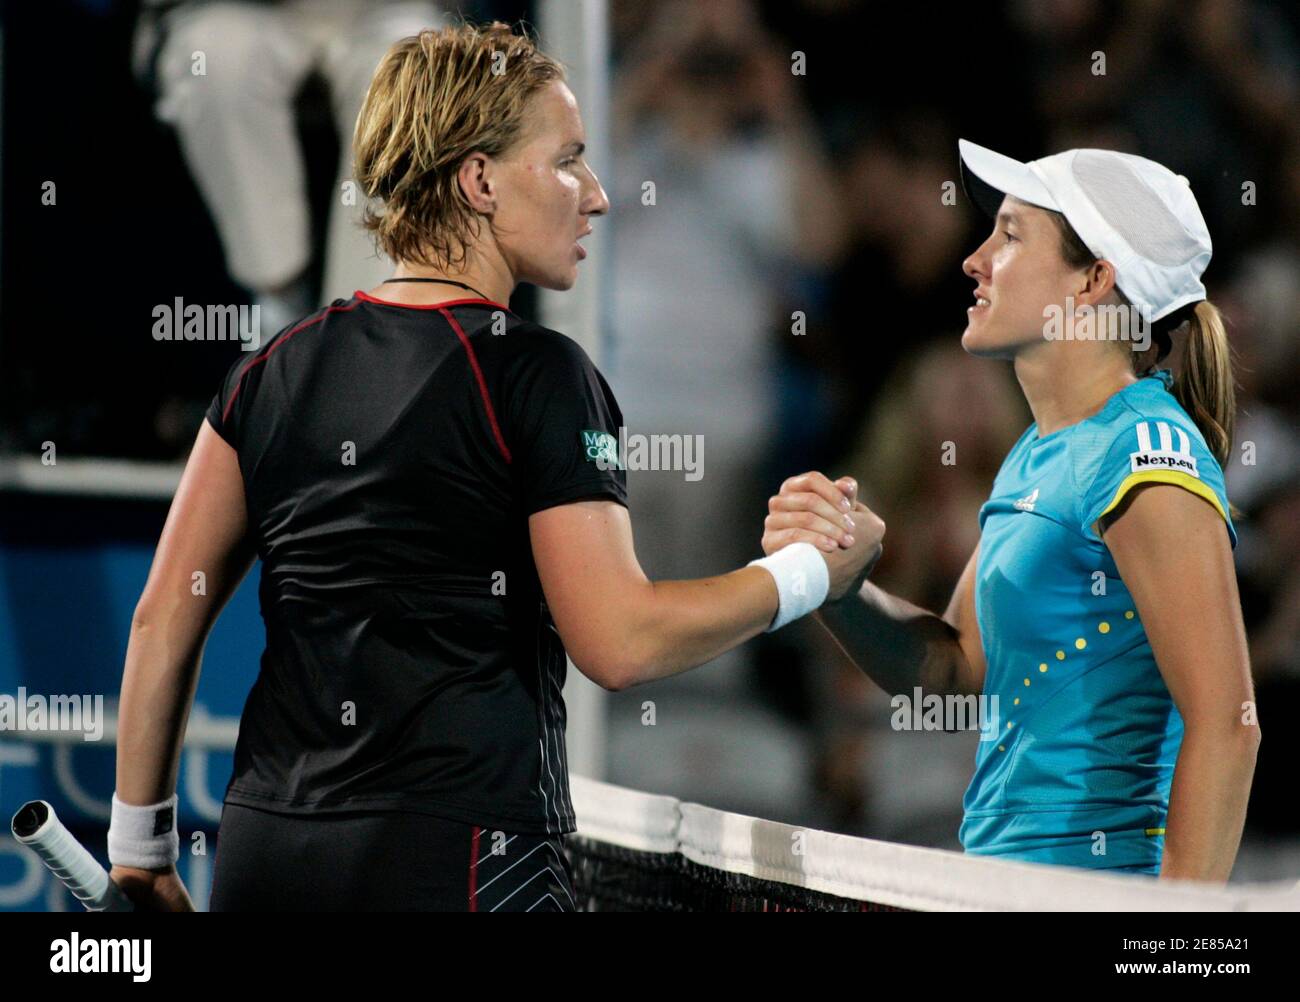 Justine Henin, de Belgique (R), se serre la main avec Svetlana Kuznetsova, de Russie, après avoir remporté le titre féminin de singles au tournoi international de tennis de Sydney le 11 janvier 2008. REUTERS/will Burgess (AUSTRALIE) Banque D'Images